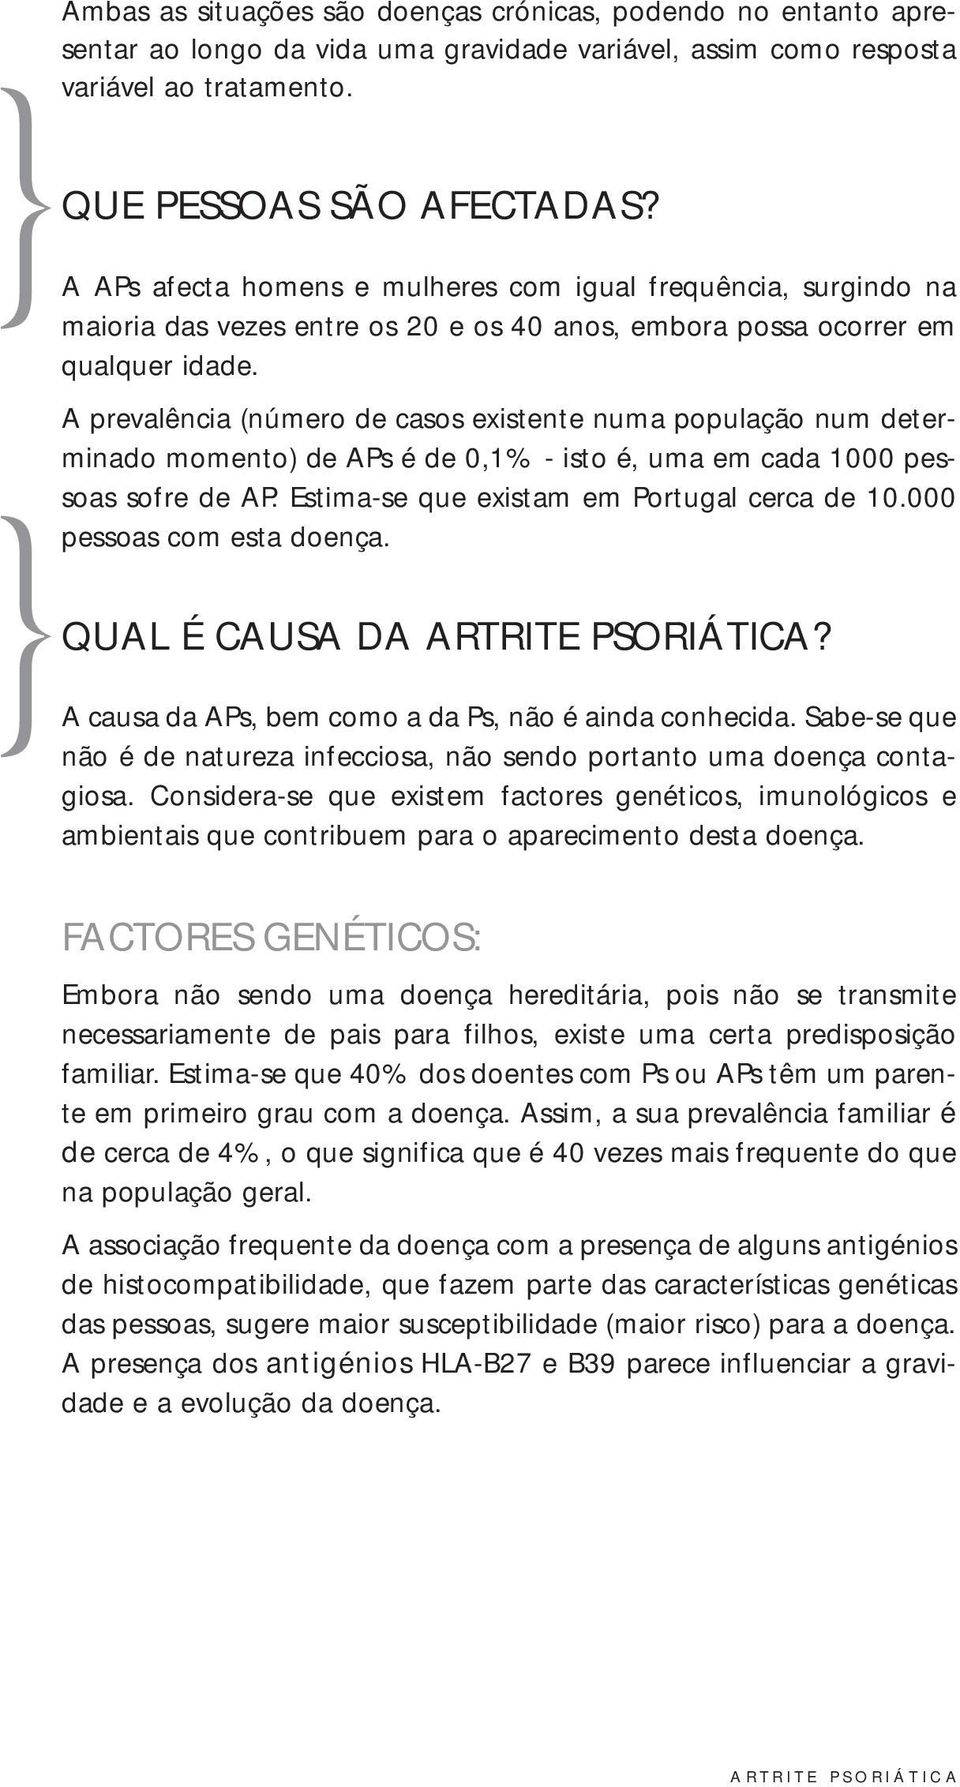 A prevalência (número de casos existente numa população num determinado momento) de APs é de 0,1% - isto é, uma em cada 1000 pessoas sofre de AP. Estima-se que existam em Portugal cerca de 10.